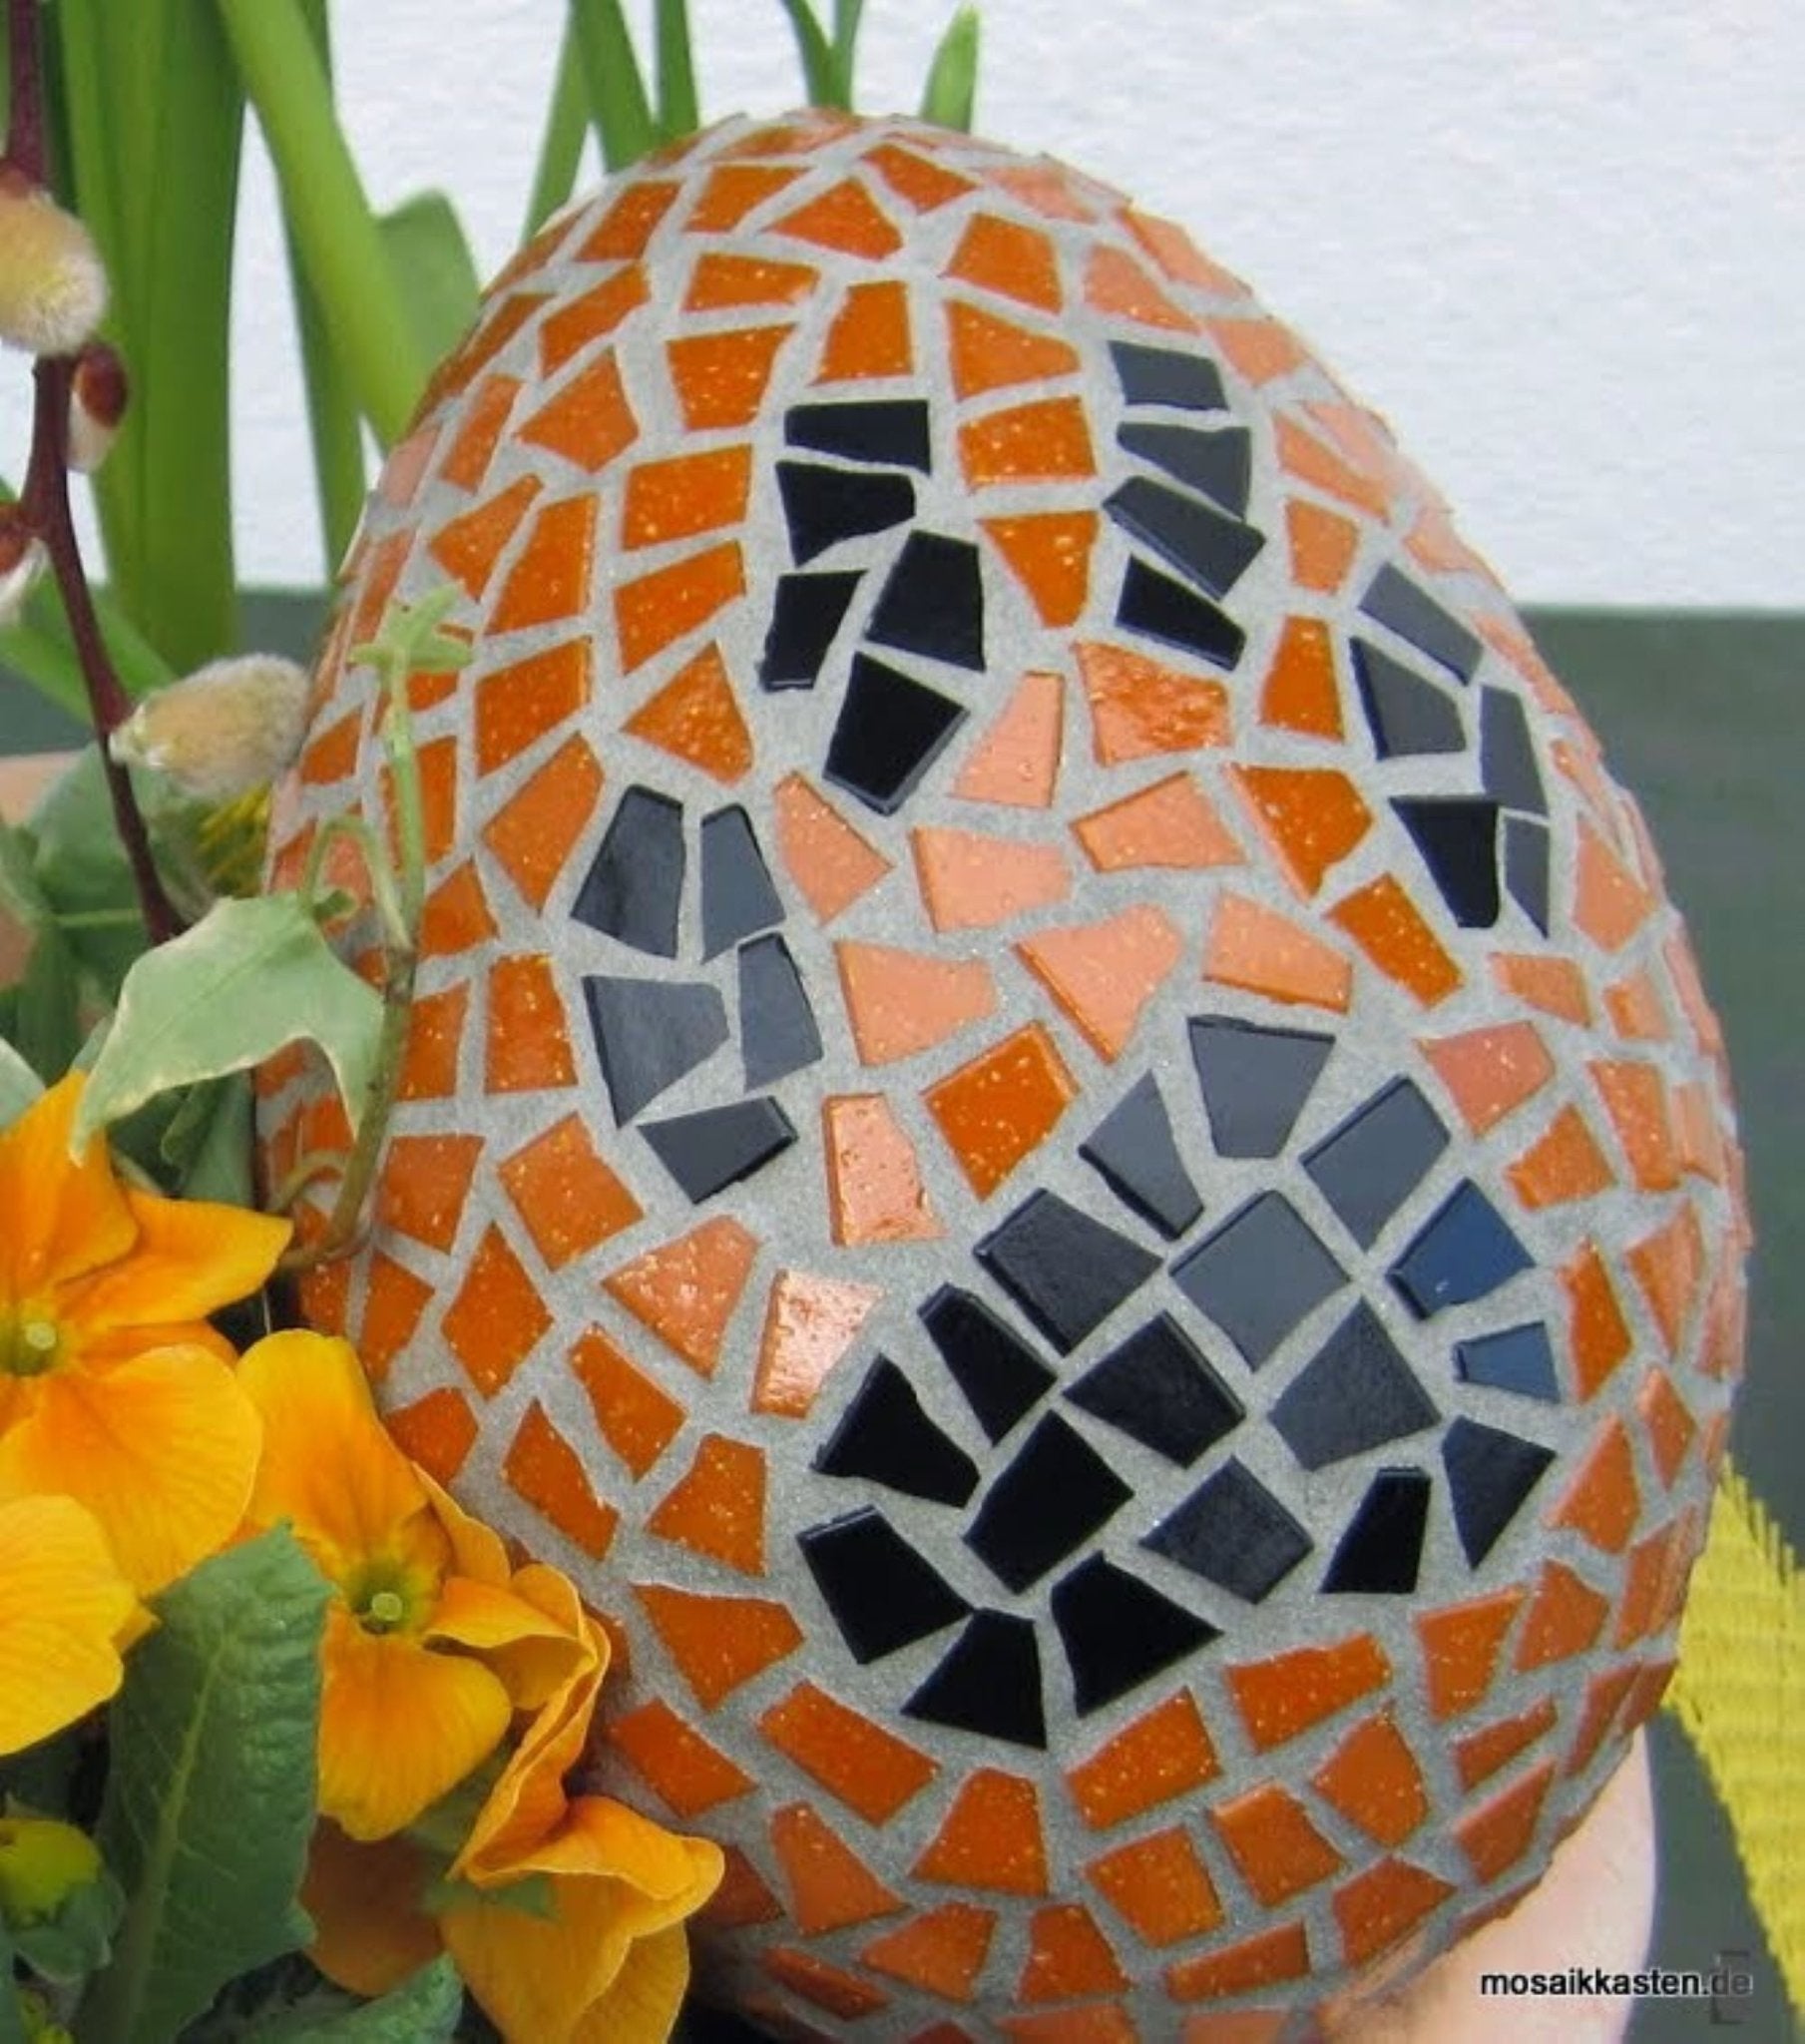 Handgemachtes Mosaikei Pfoty orange schwarz 15 cm - Mosaikkasten Abverkauf Deko für draußen